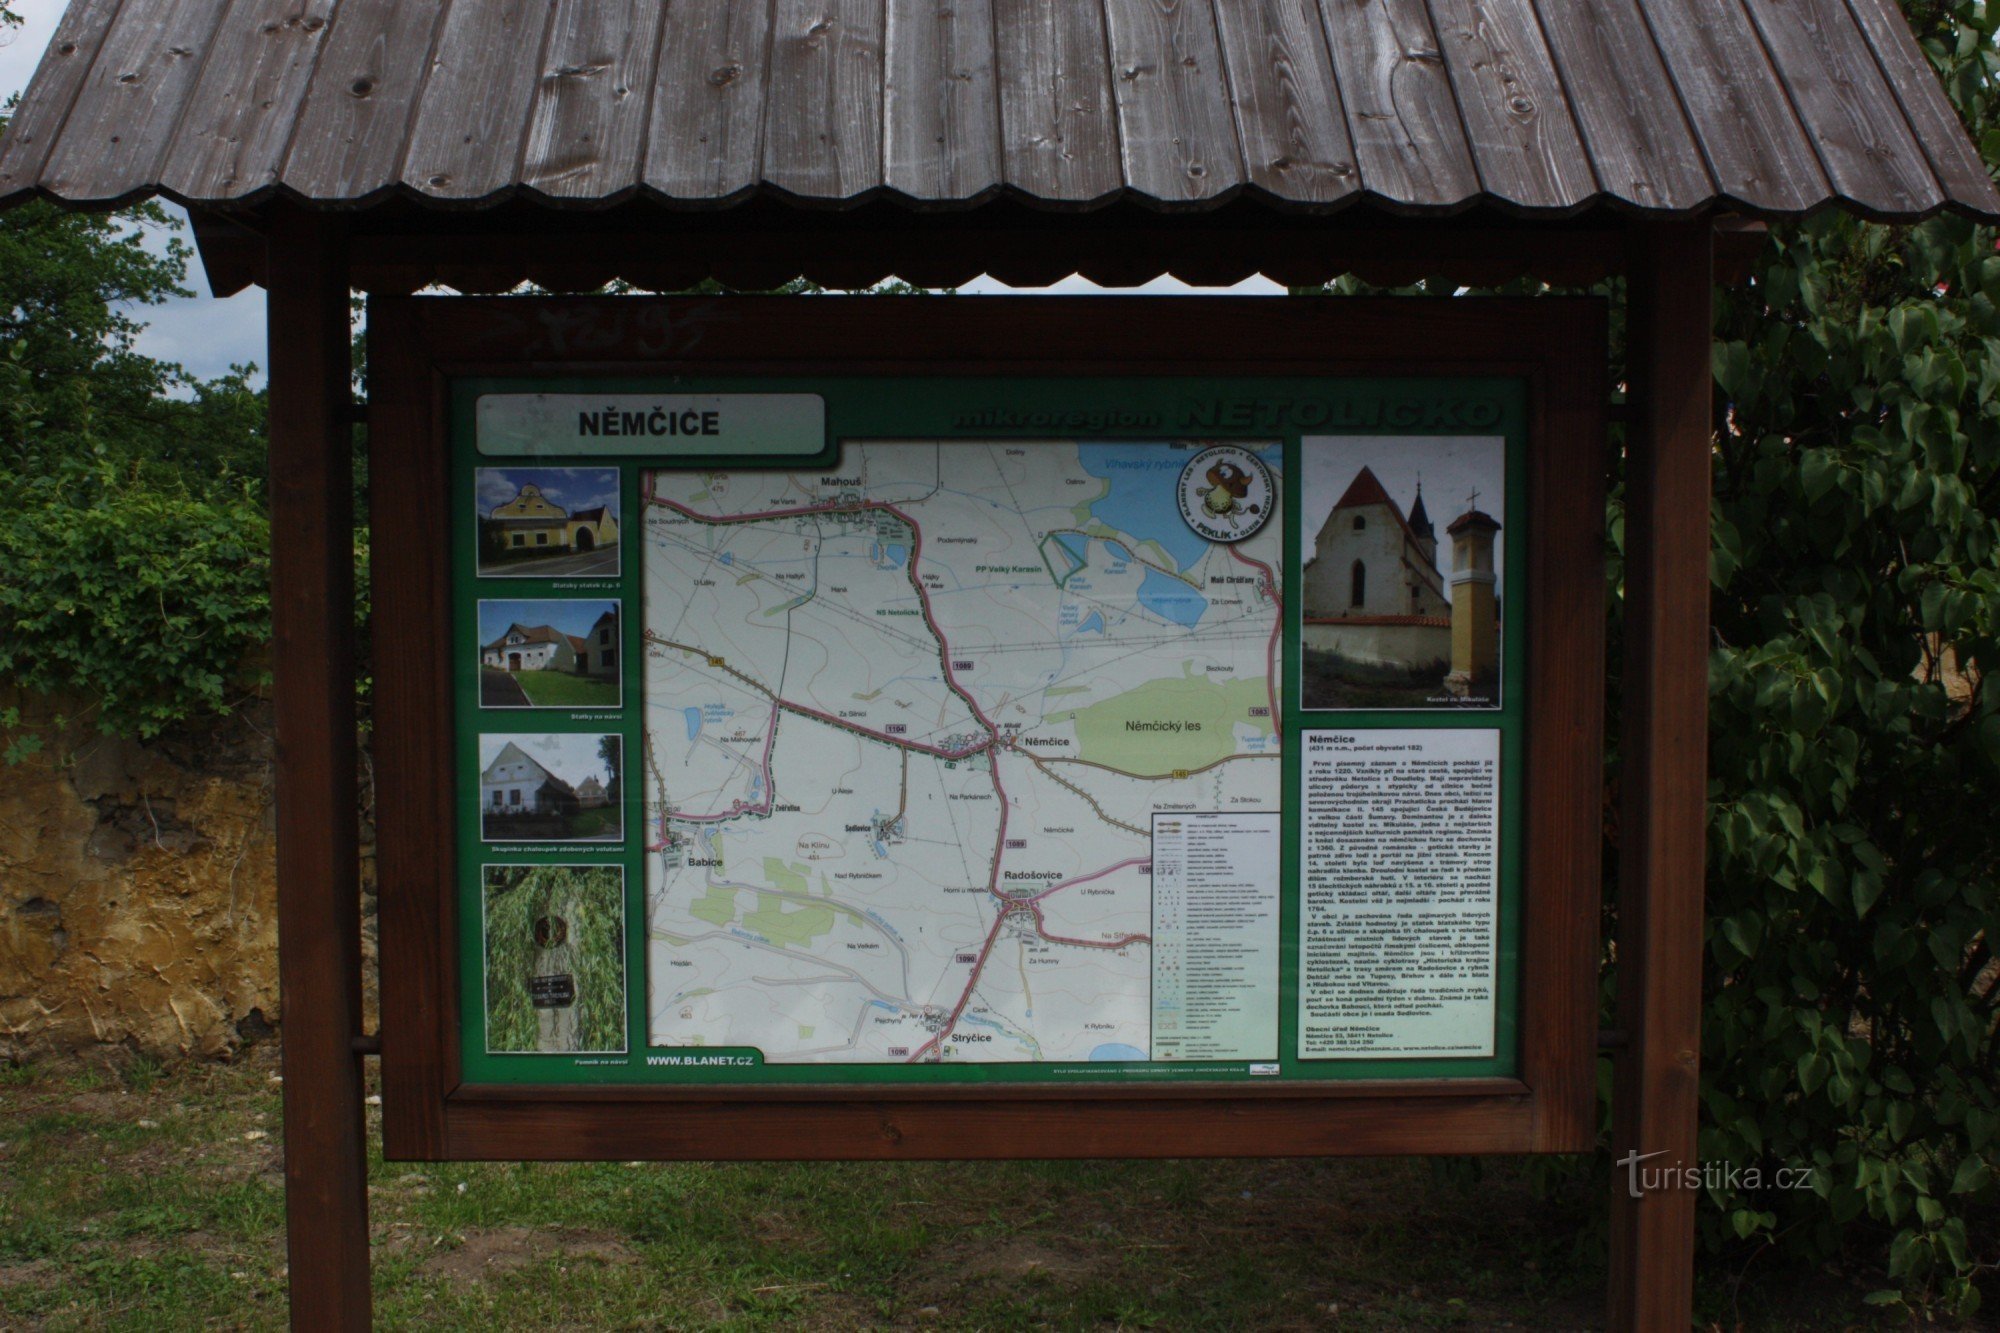 Bảng thông tin du lịch ở Němčice gần Netolice